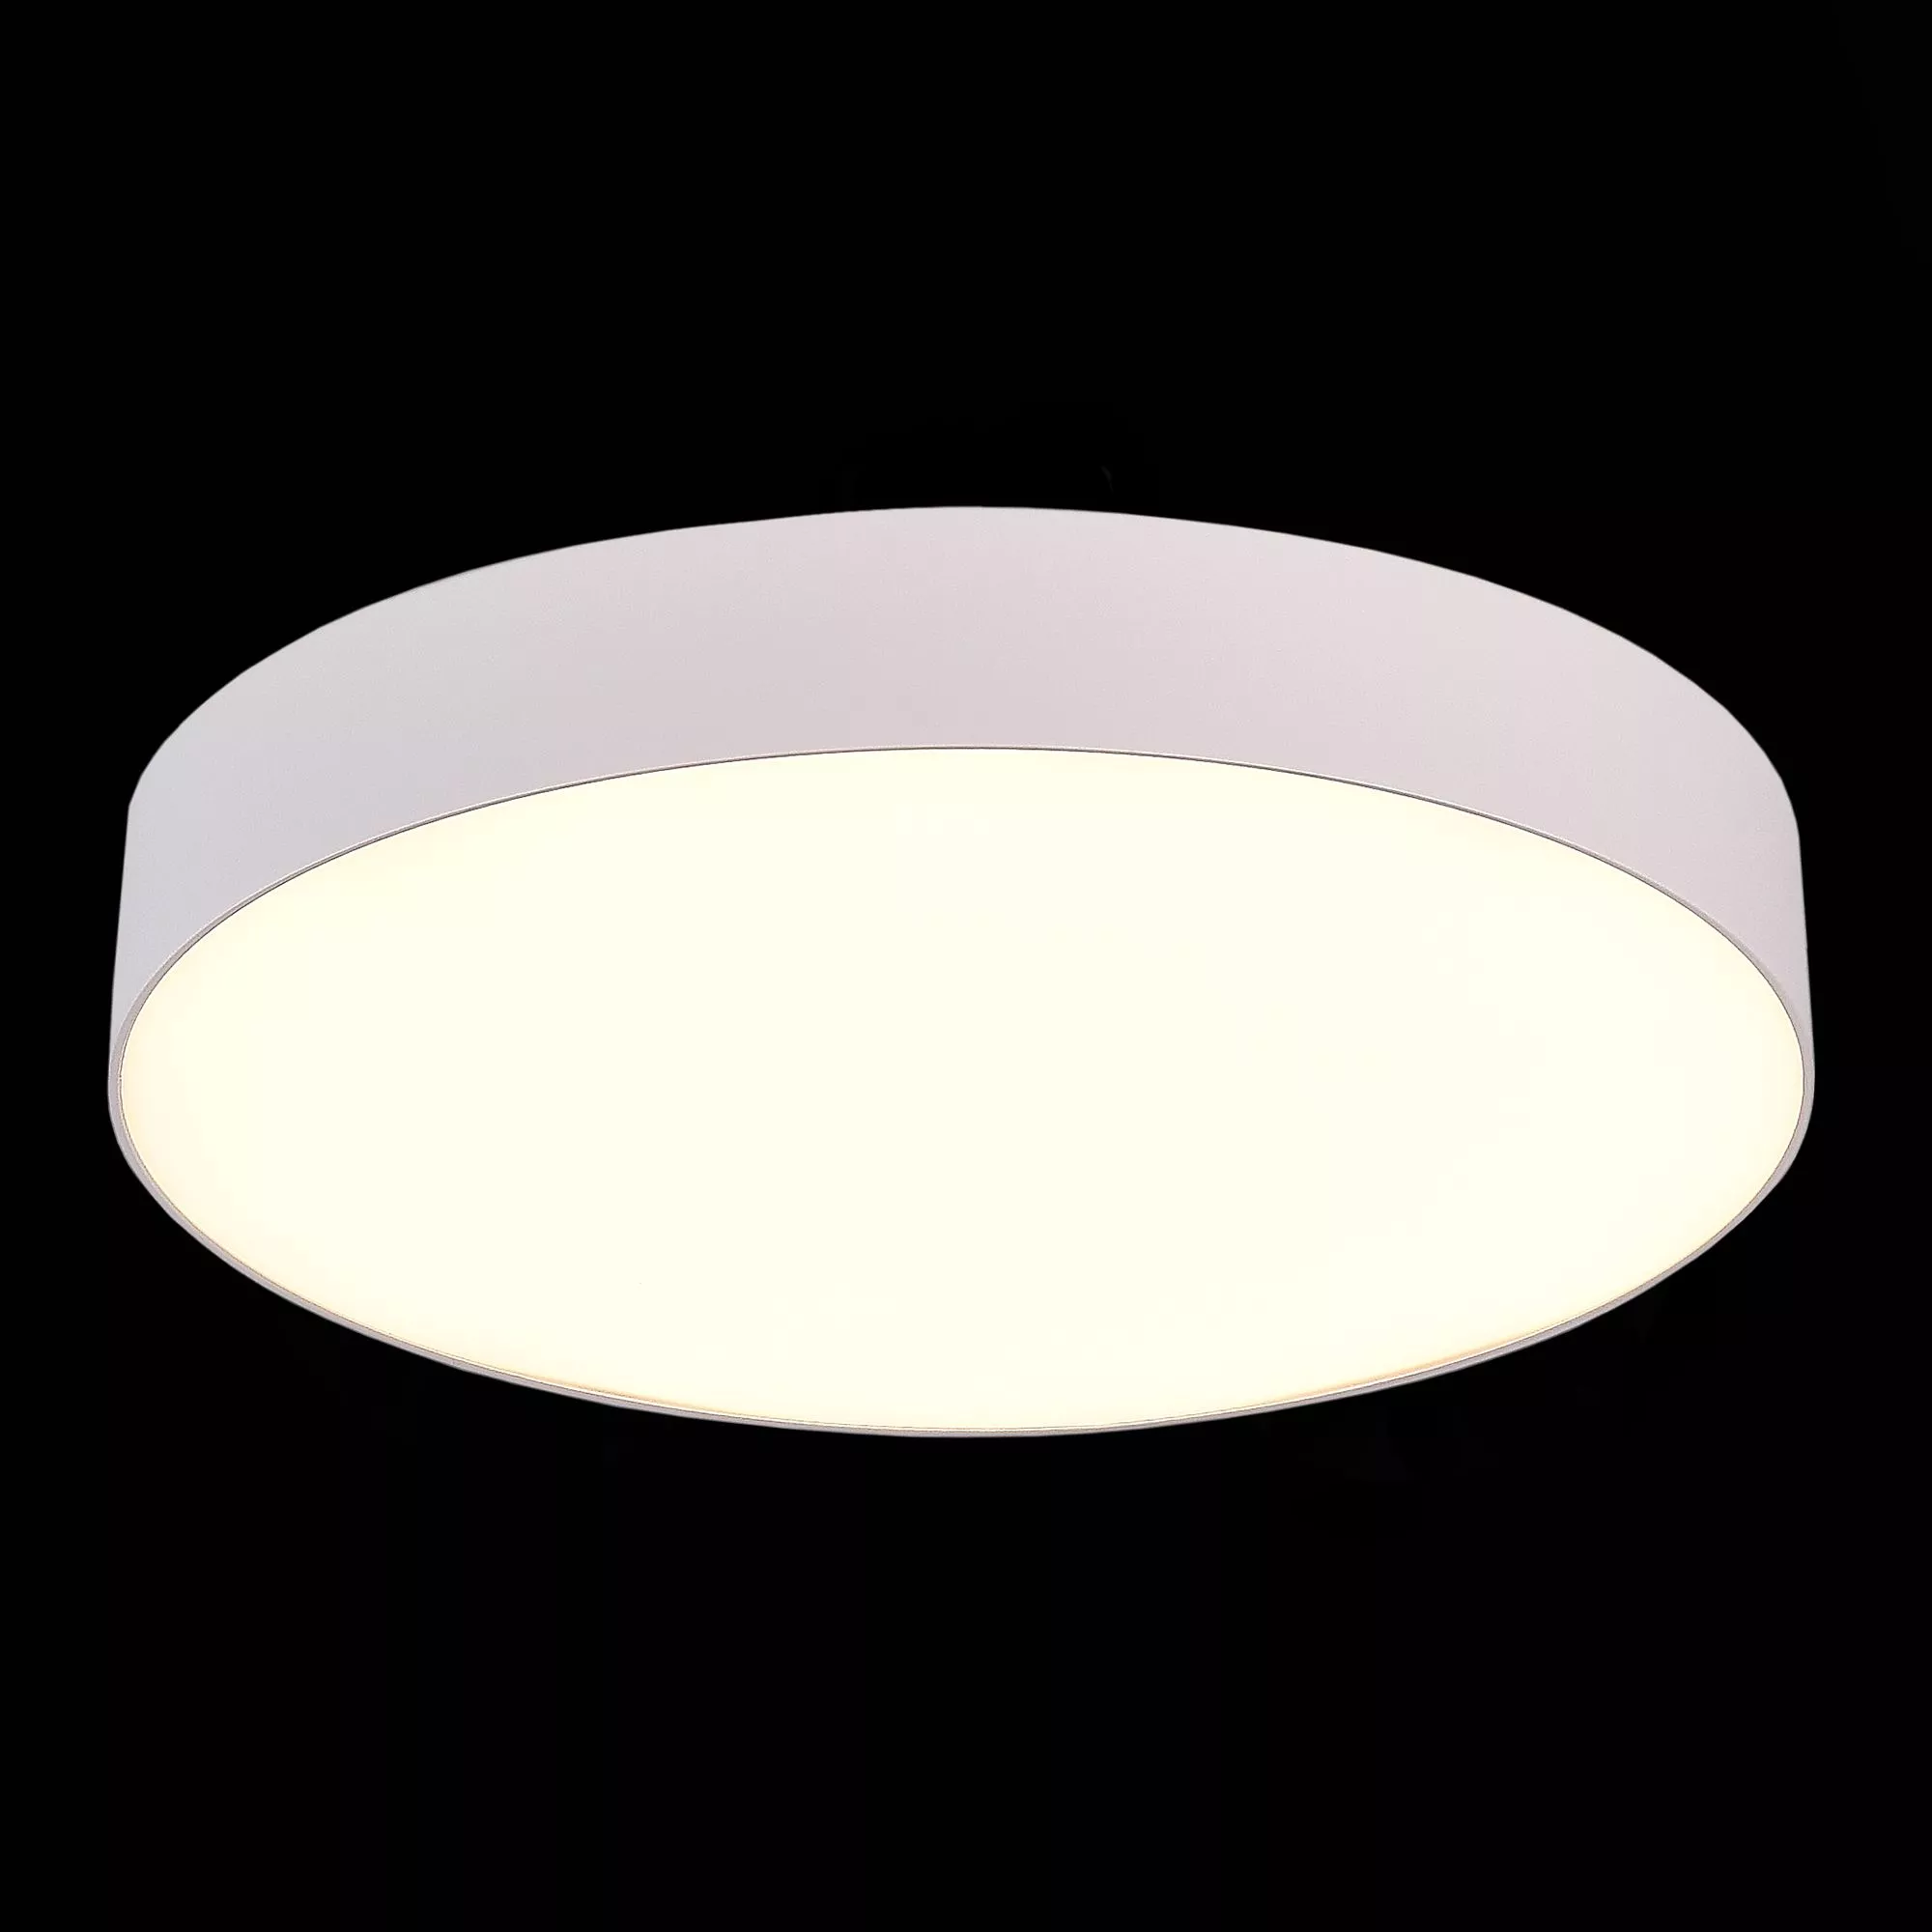 Потолочный светильник Белый LED 185-265V St Luce ST606.532.48